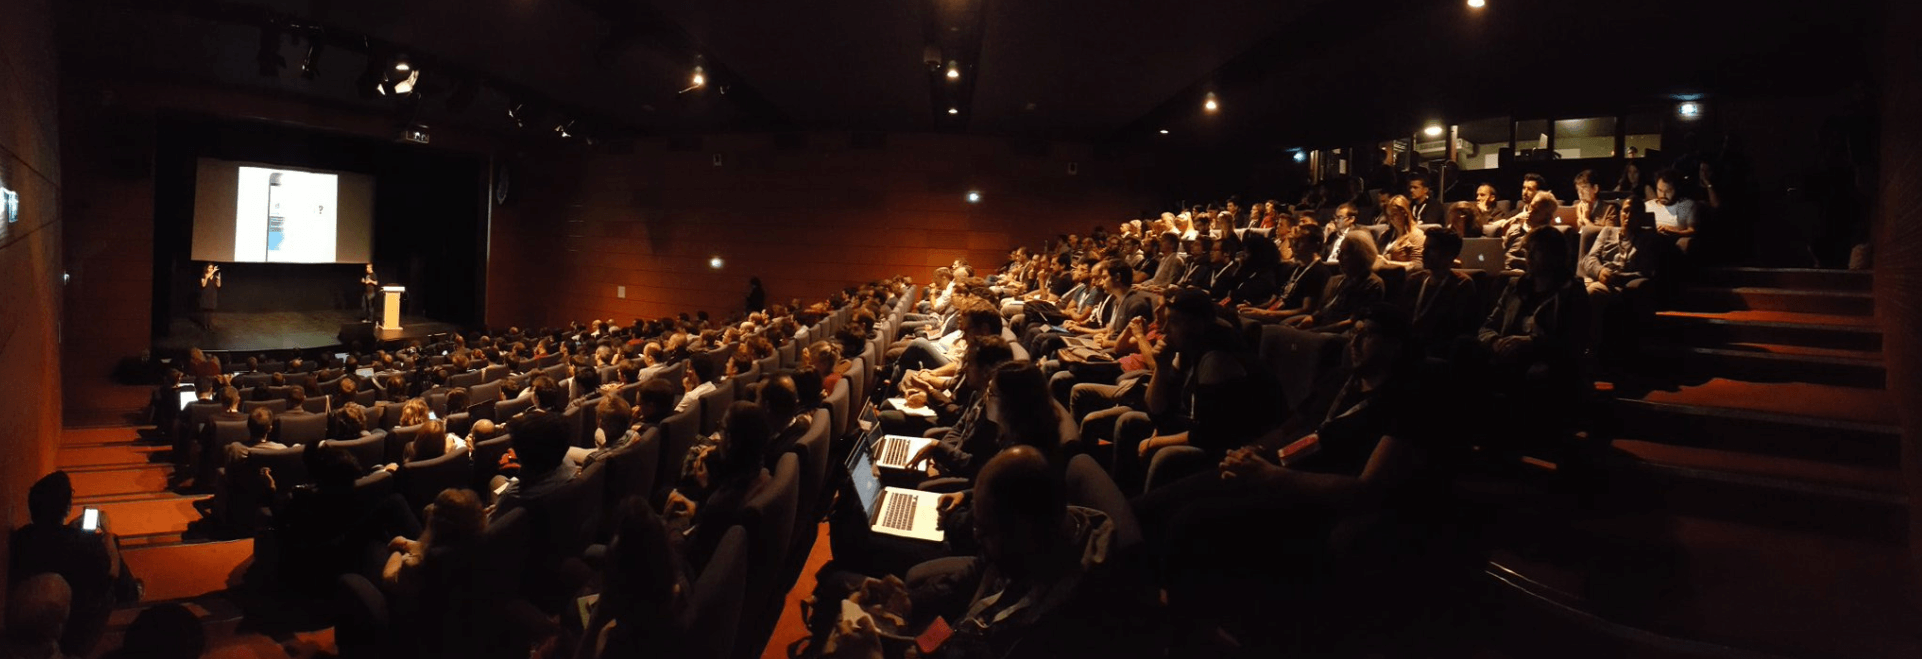 Grande salle de conférence à Paris Web